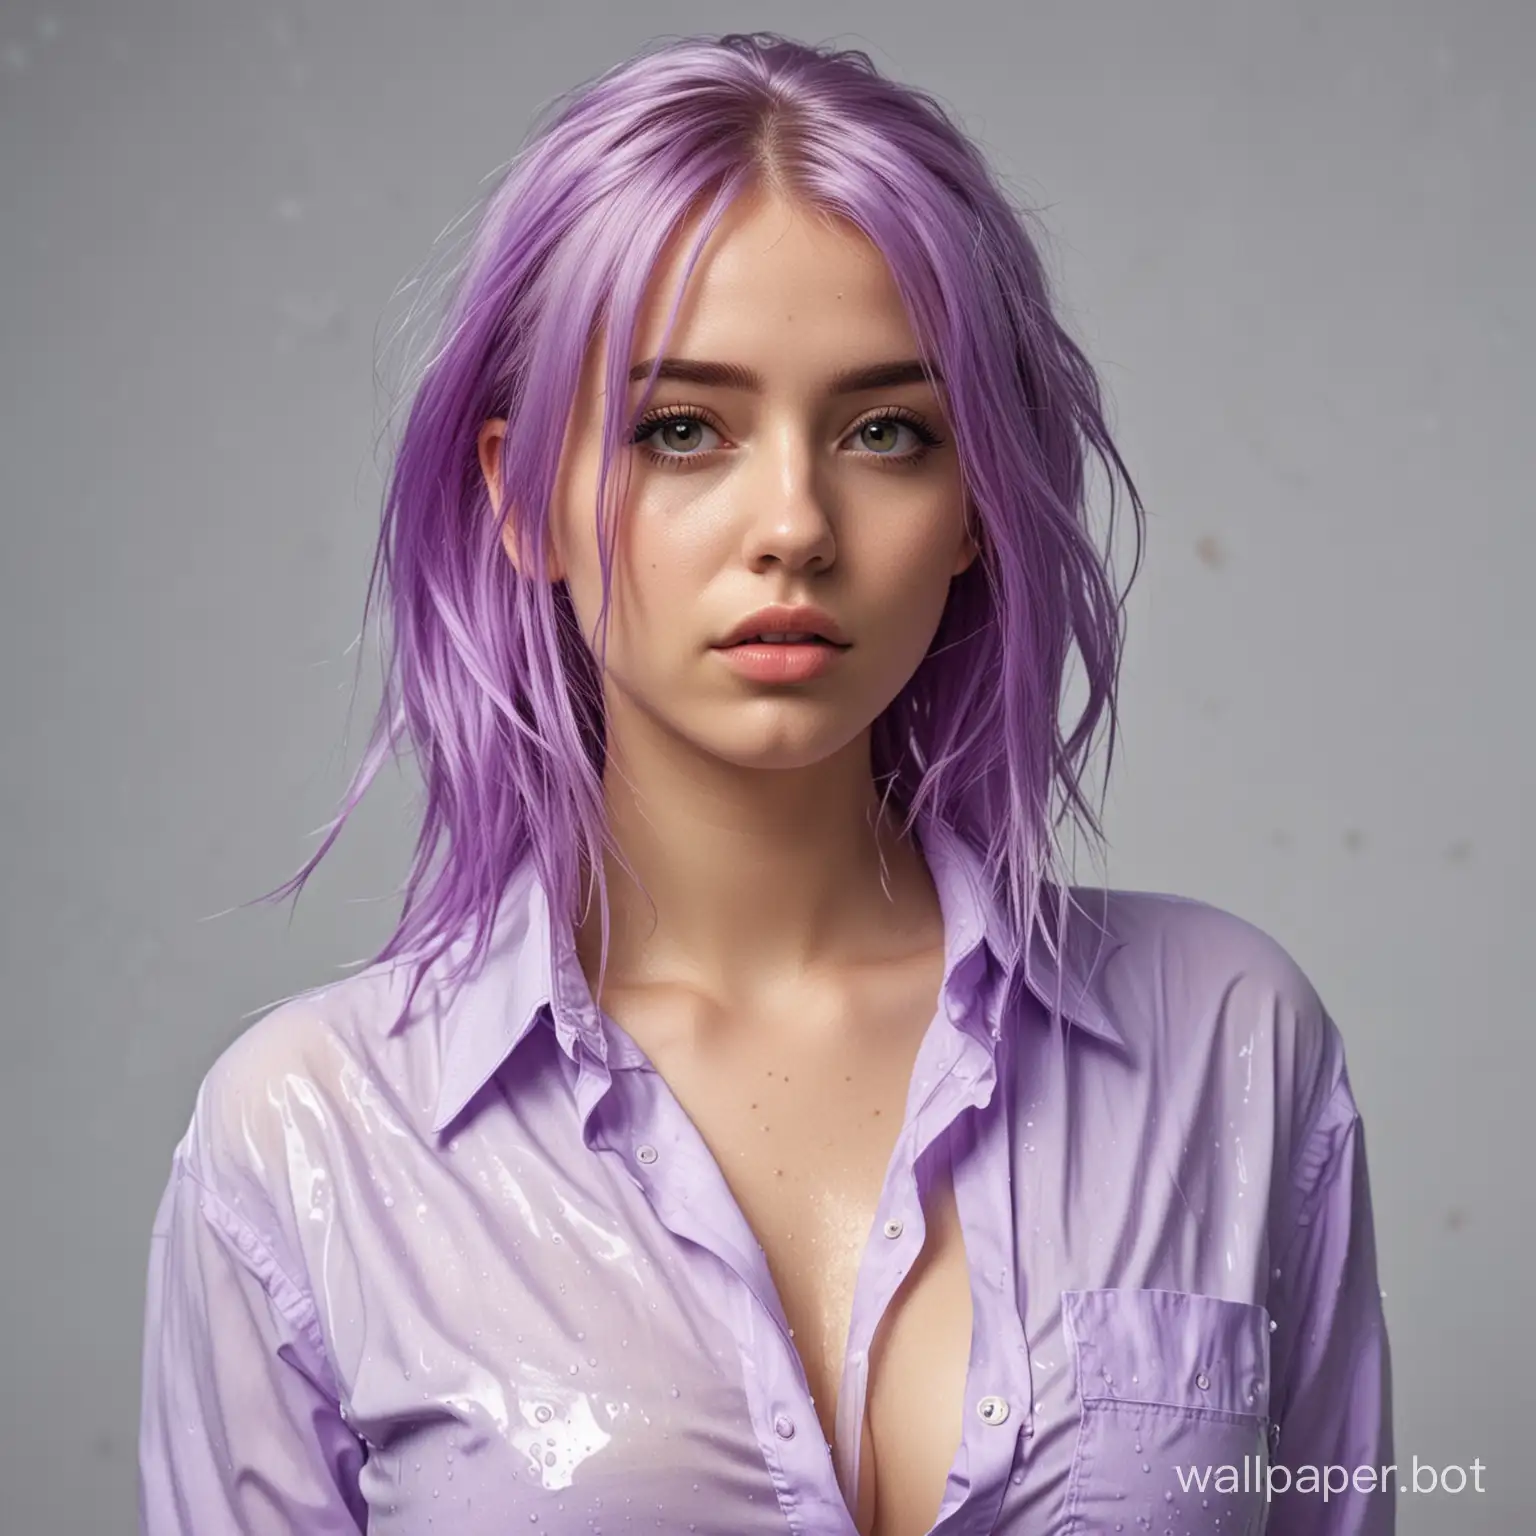 Девушка, в рубашке, большая грудь, мокрая, фиолетовый цвет волос